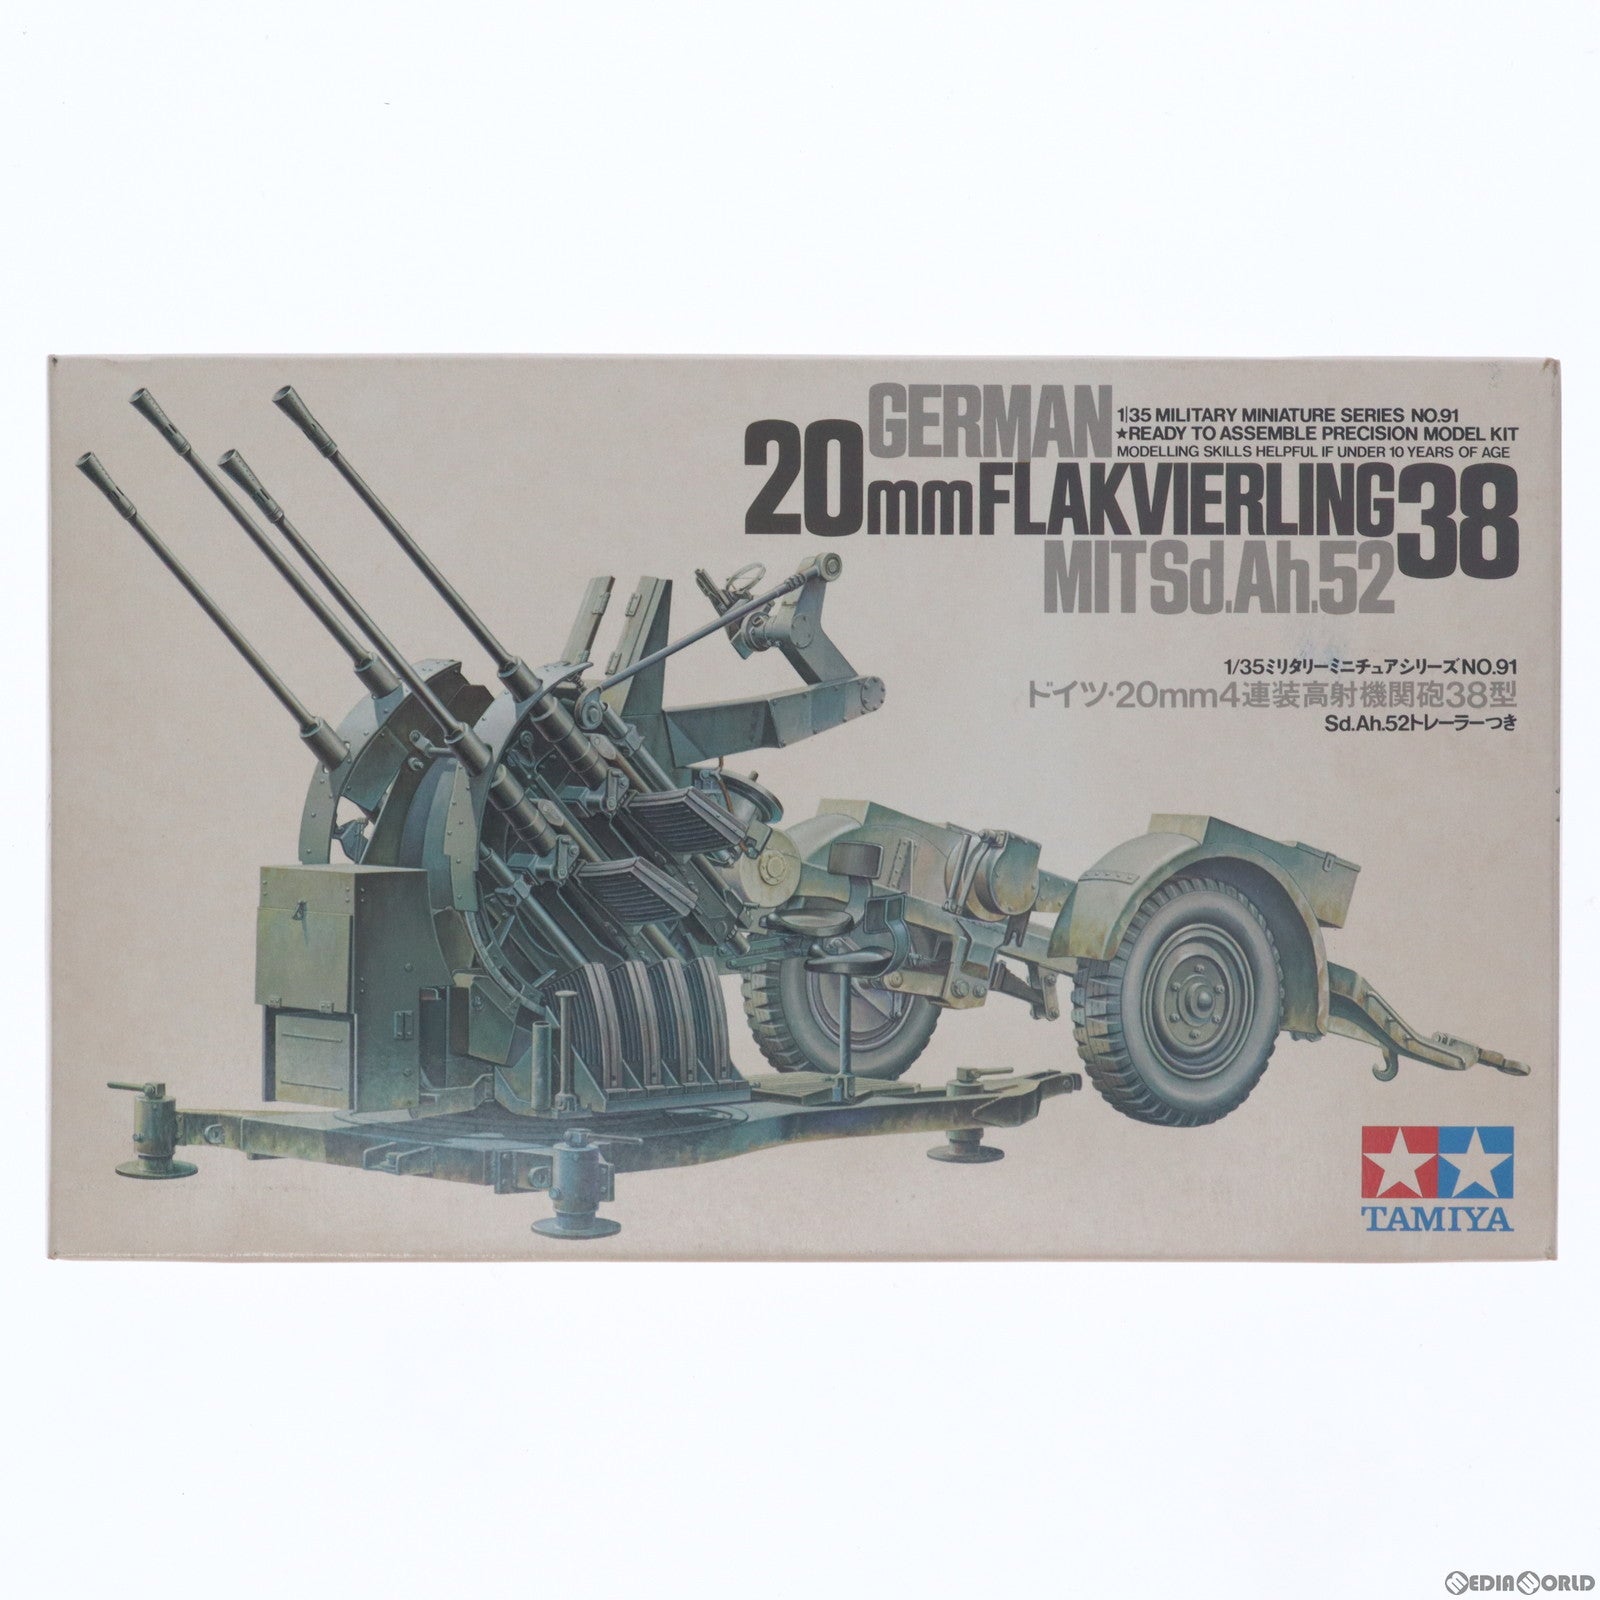 【中古即納】[PTM]1/35 ドイツ 20mm 4連装高射機関砲38型 ミリタリーミニチュアシリーズ No.91 プラモデル(3591) タミヤ(19991231)